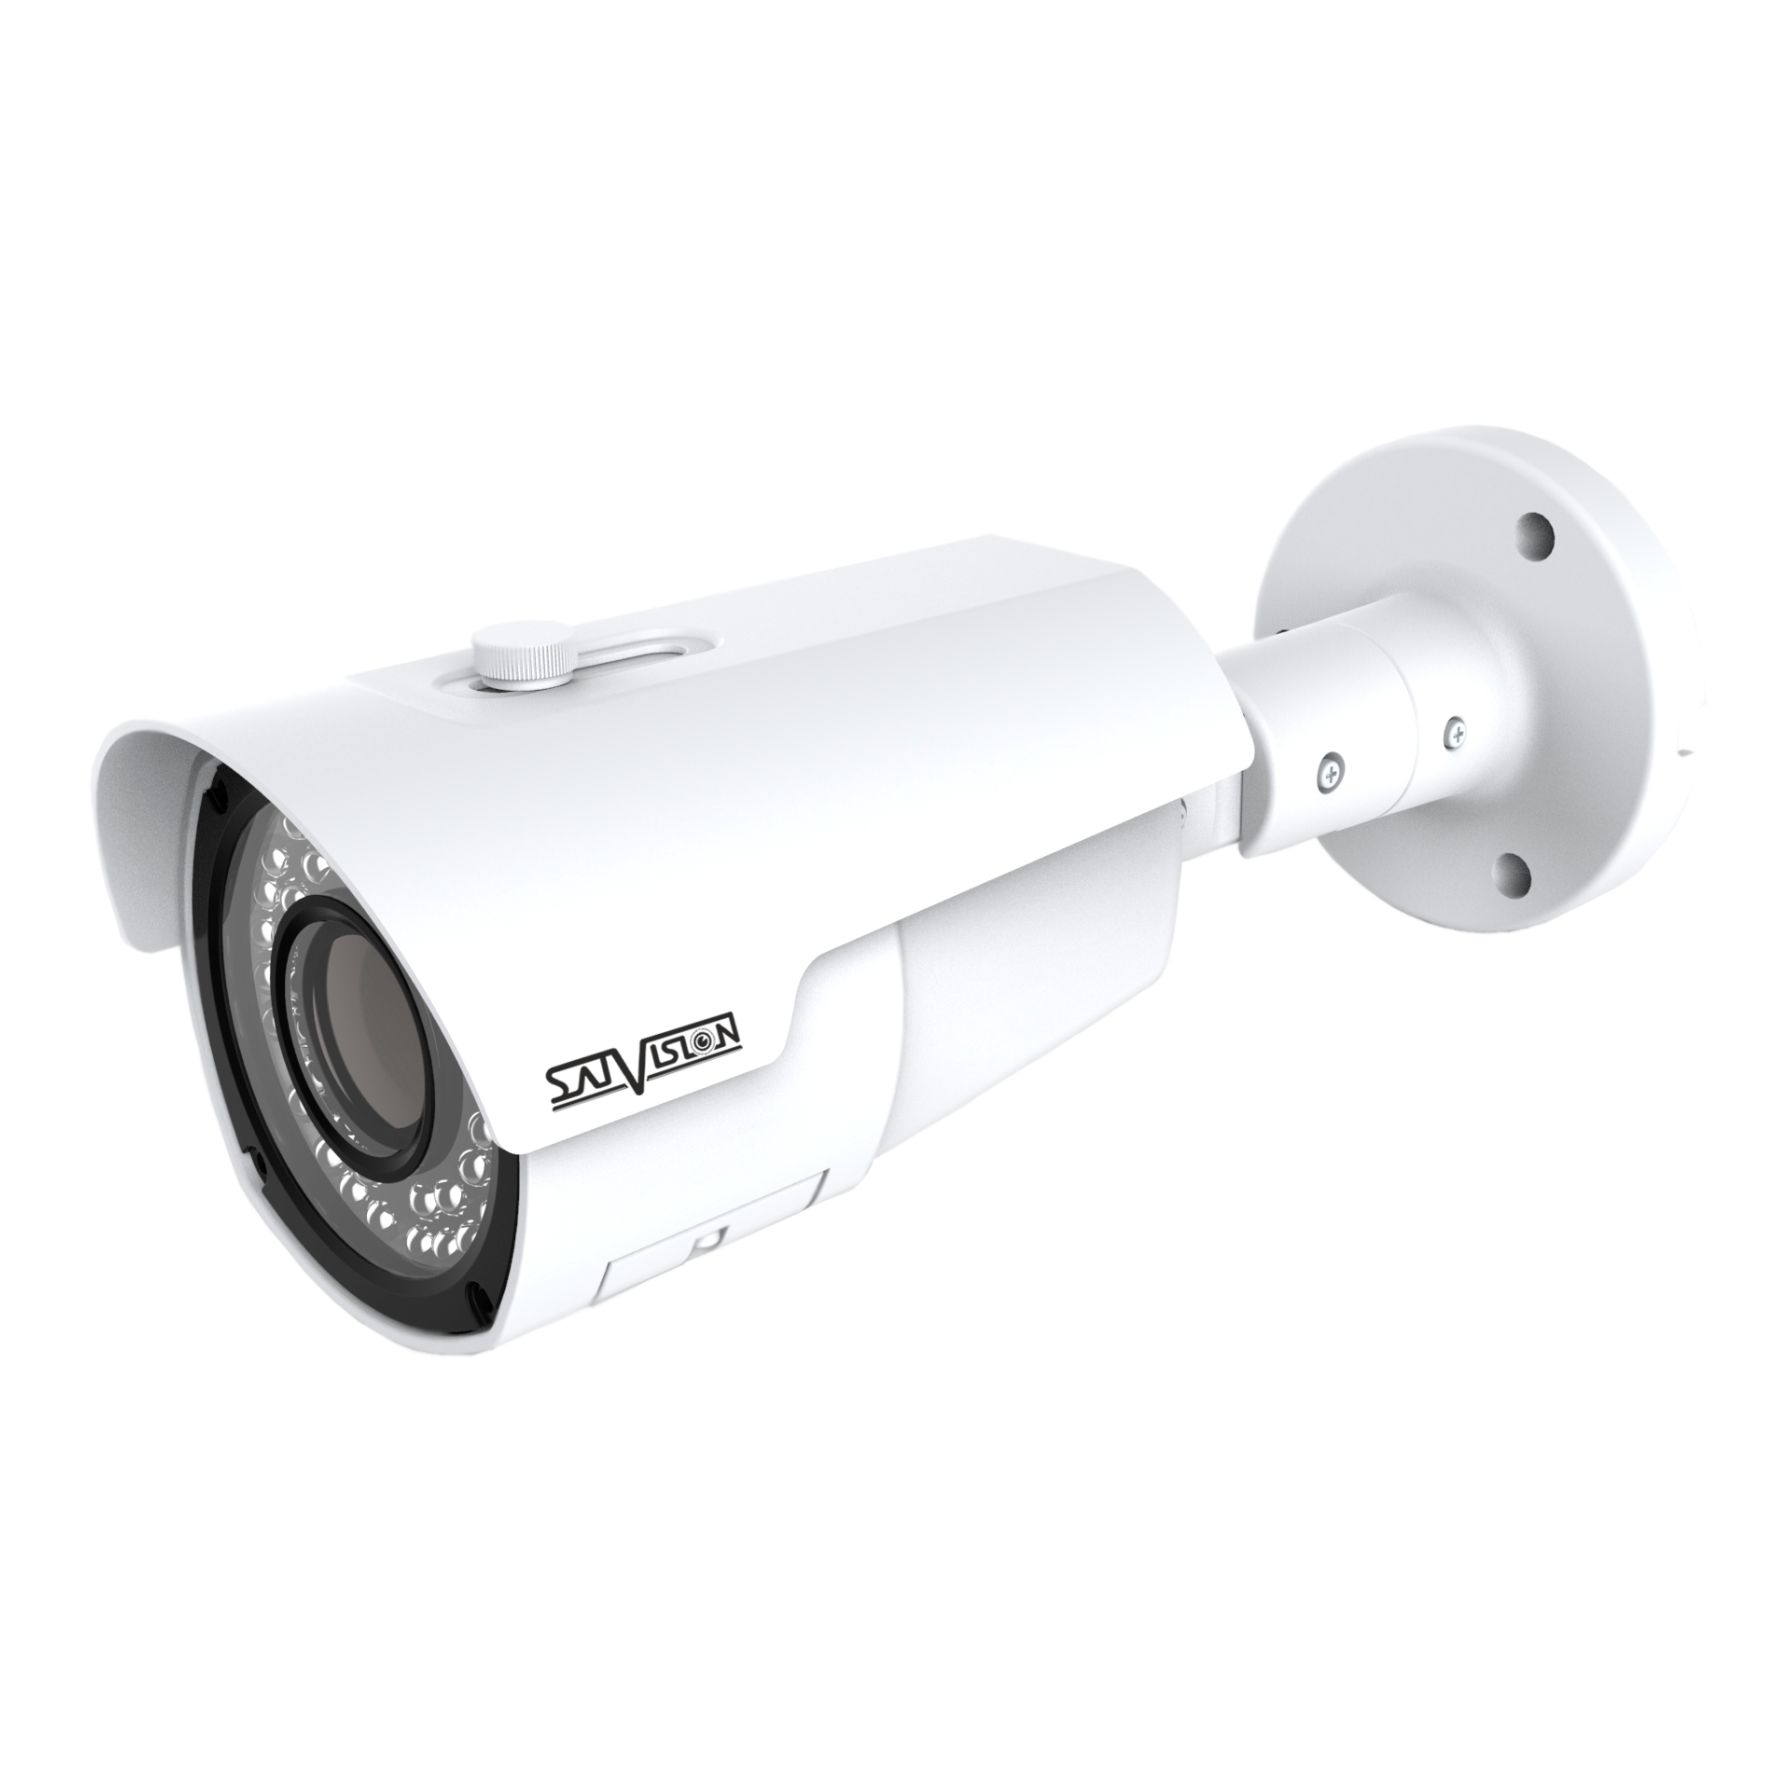 Камеры купить оренбург. Svi-s323v SD SL. Камера системы видеонаблюдения QTECH QVC-IPC-406p2 2.8мм 2592x1520пикс 1/2.7". IP-камера видеонаблюдения с вариофокальным объективом 2,8-12. DVC-s692v 2 Mpix 2.8-12mm UTC видеокамера AHD.